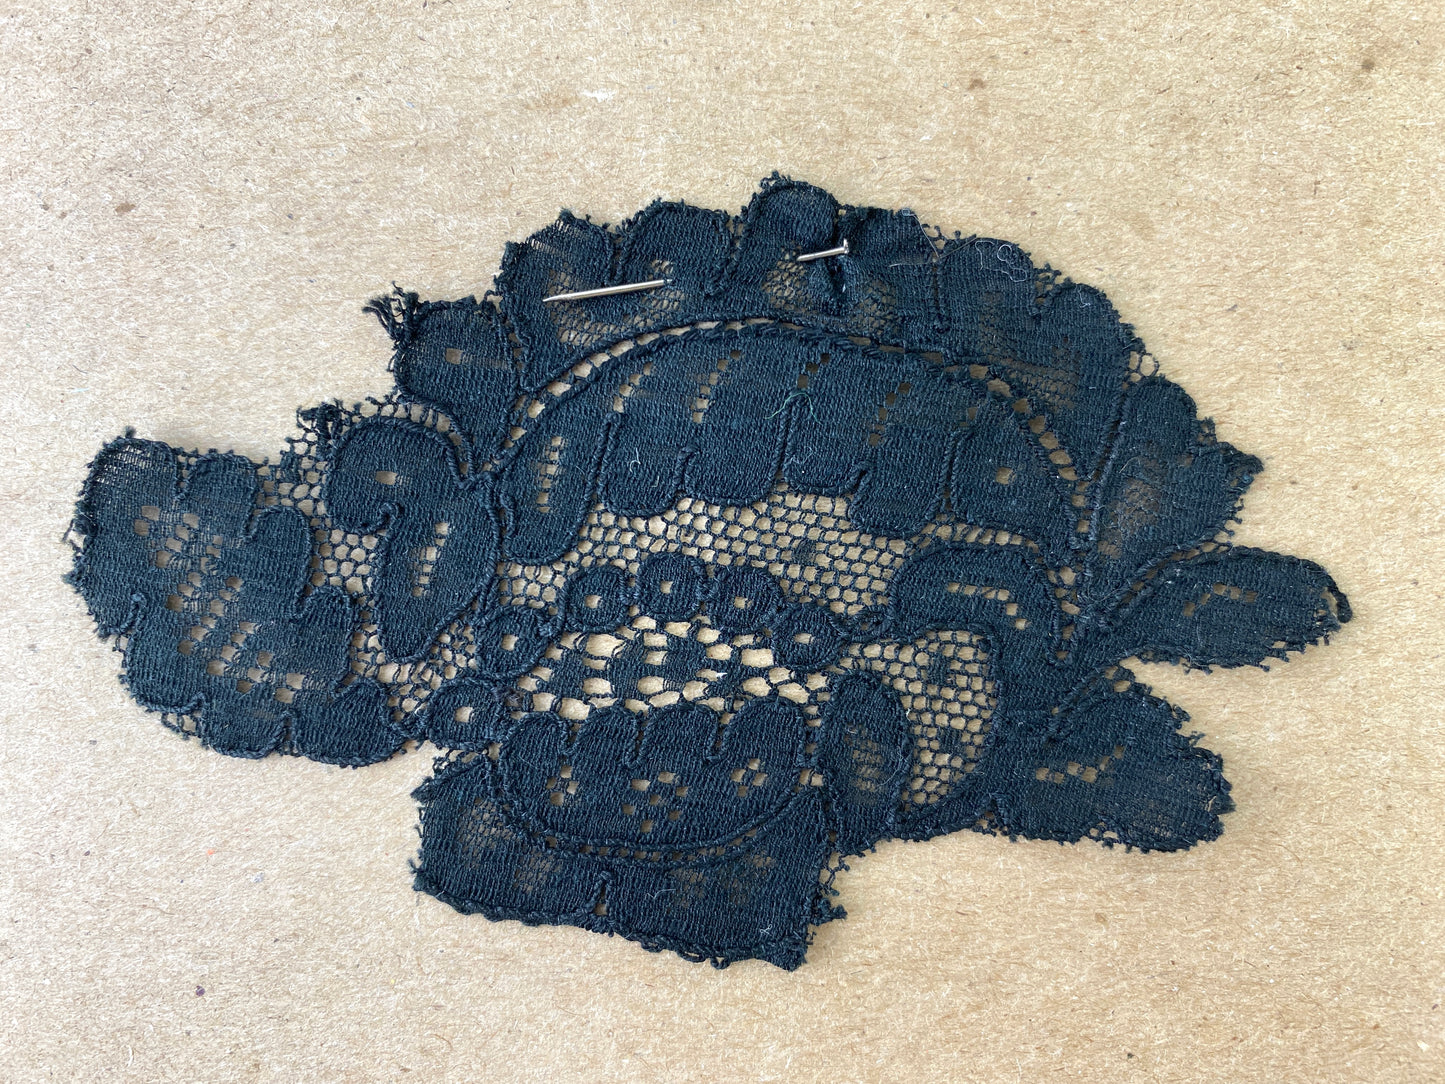 Antique Victorian Black Cotton Lace Appliqués, 29 Pieces